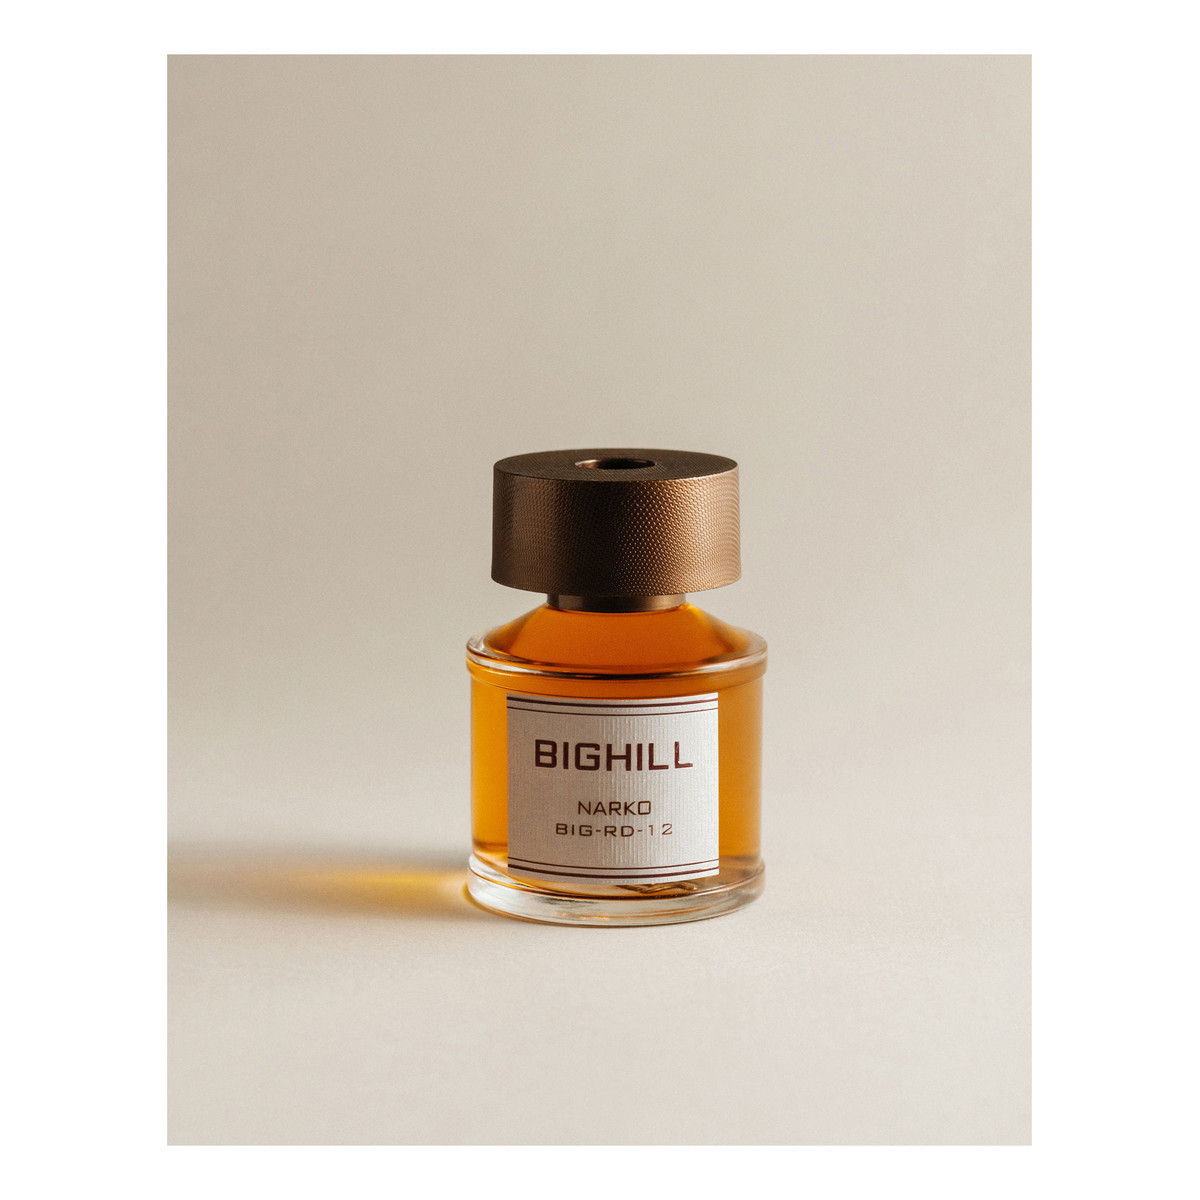 Bighill Ekskluzywny dyfuzor zapachowy z patyczkami - Narko 120ml